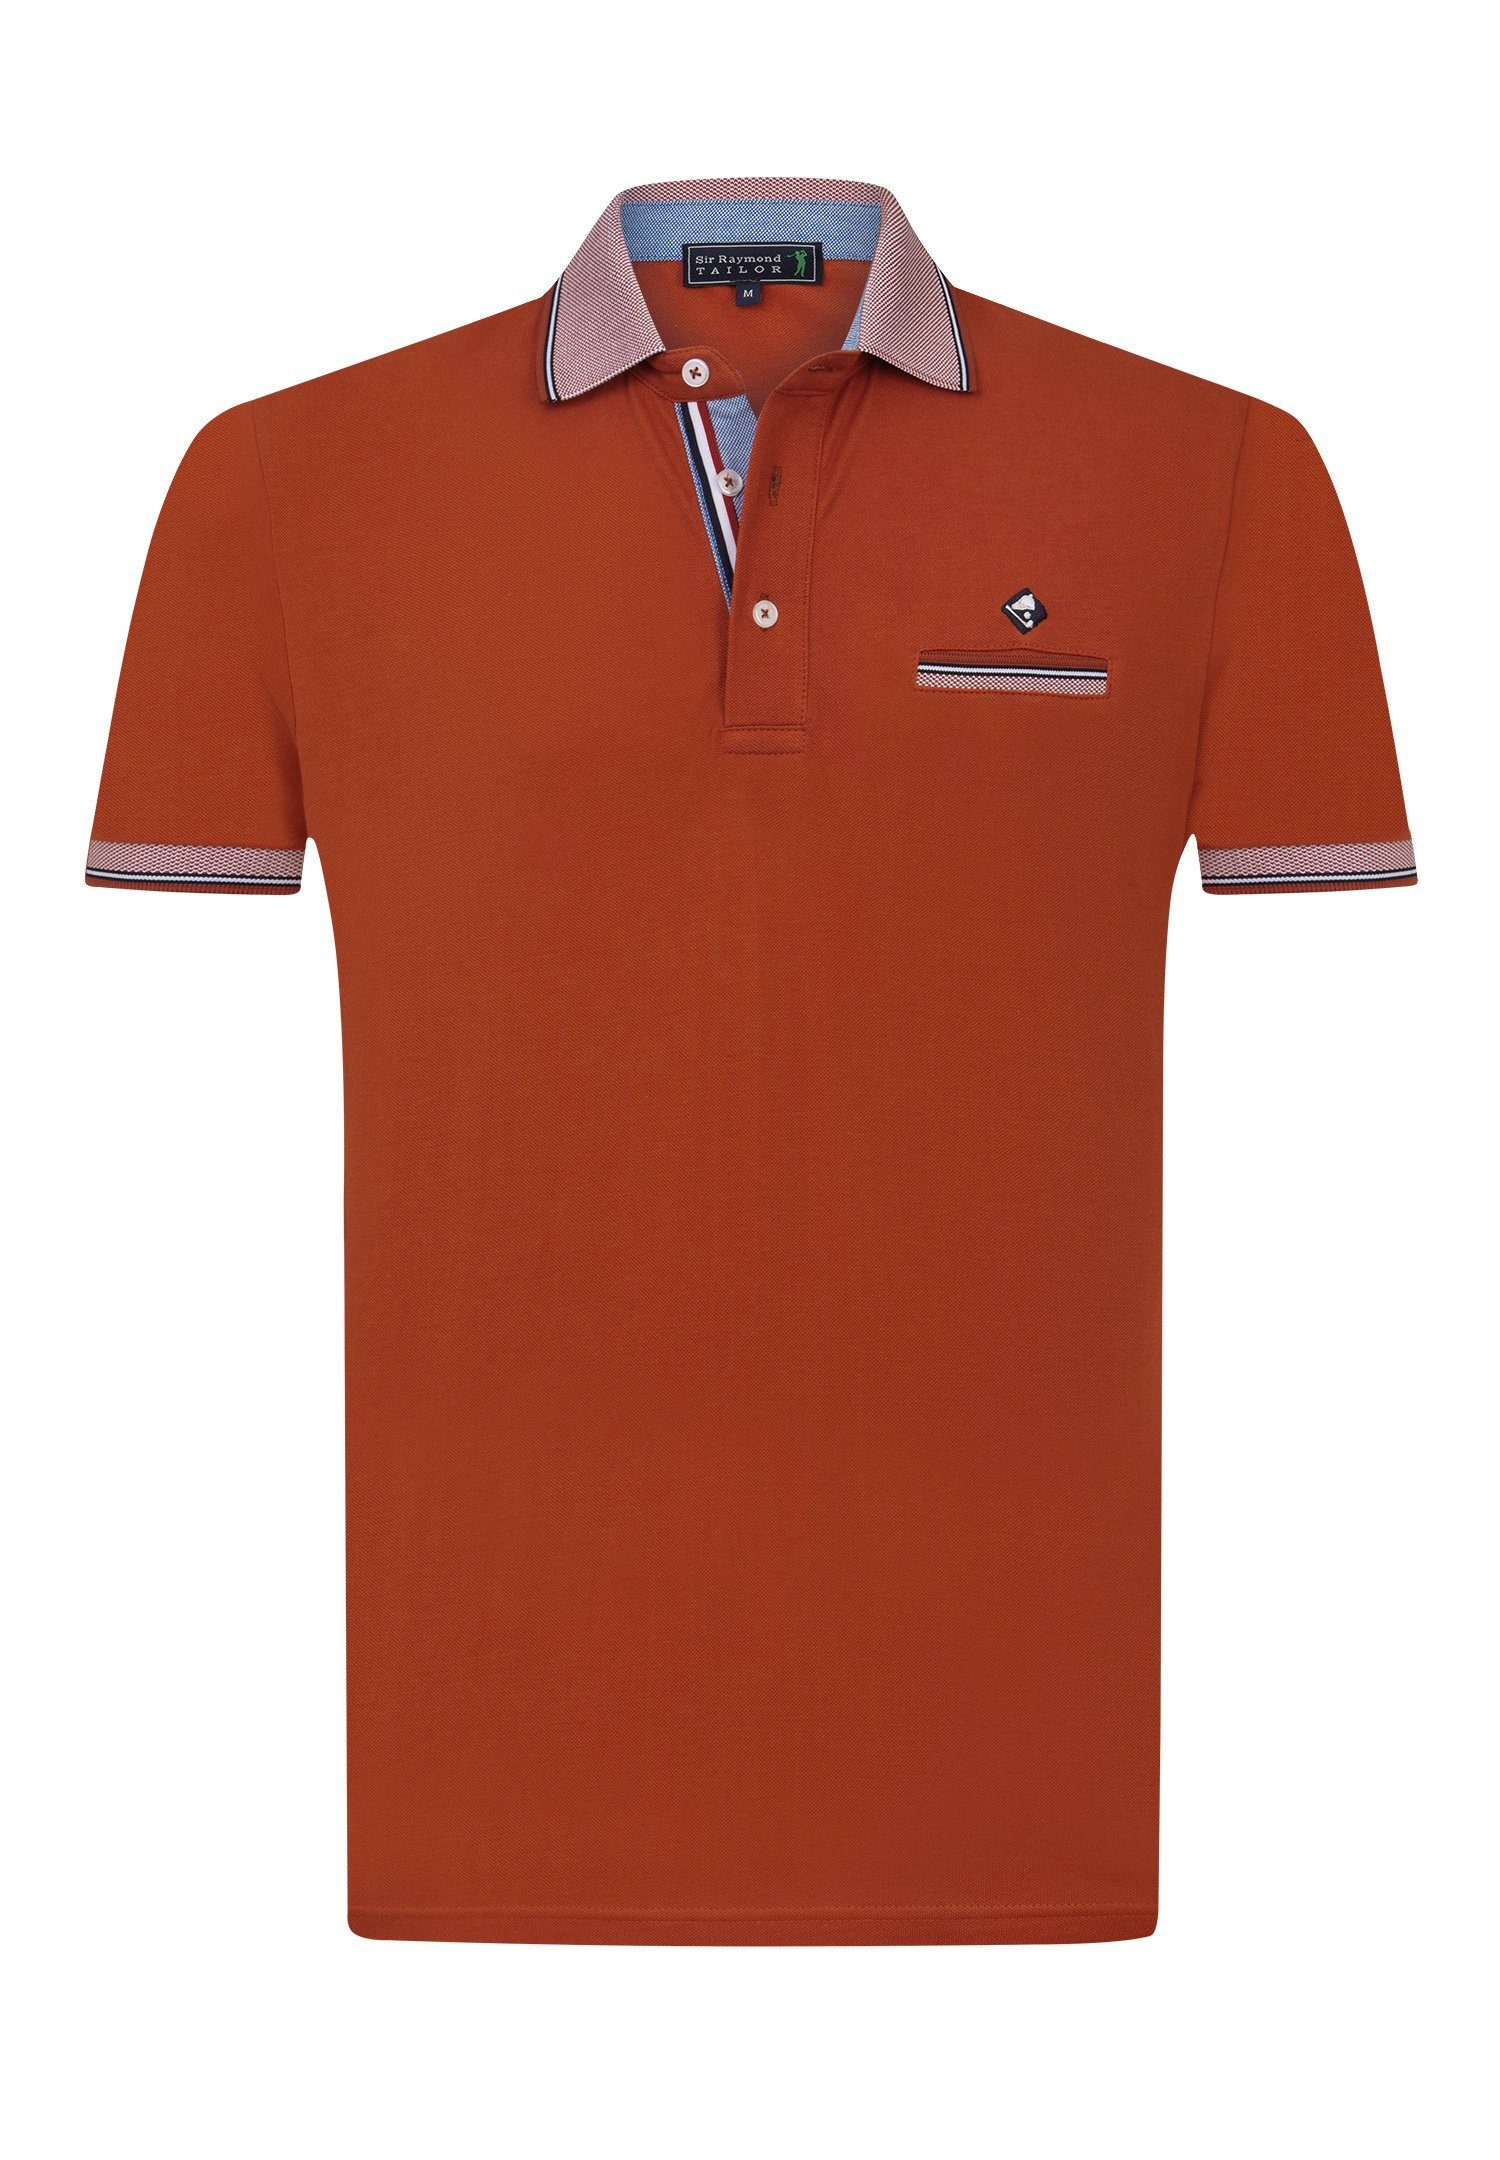 Sir Raymond Tailor Poloshirt Sims Orange